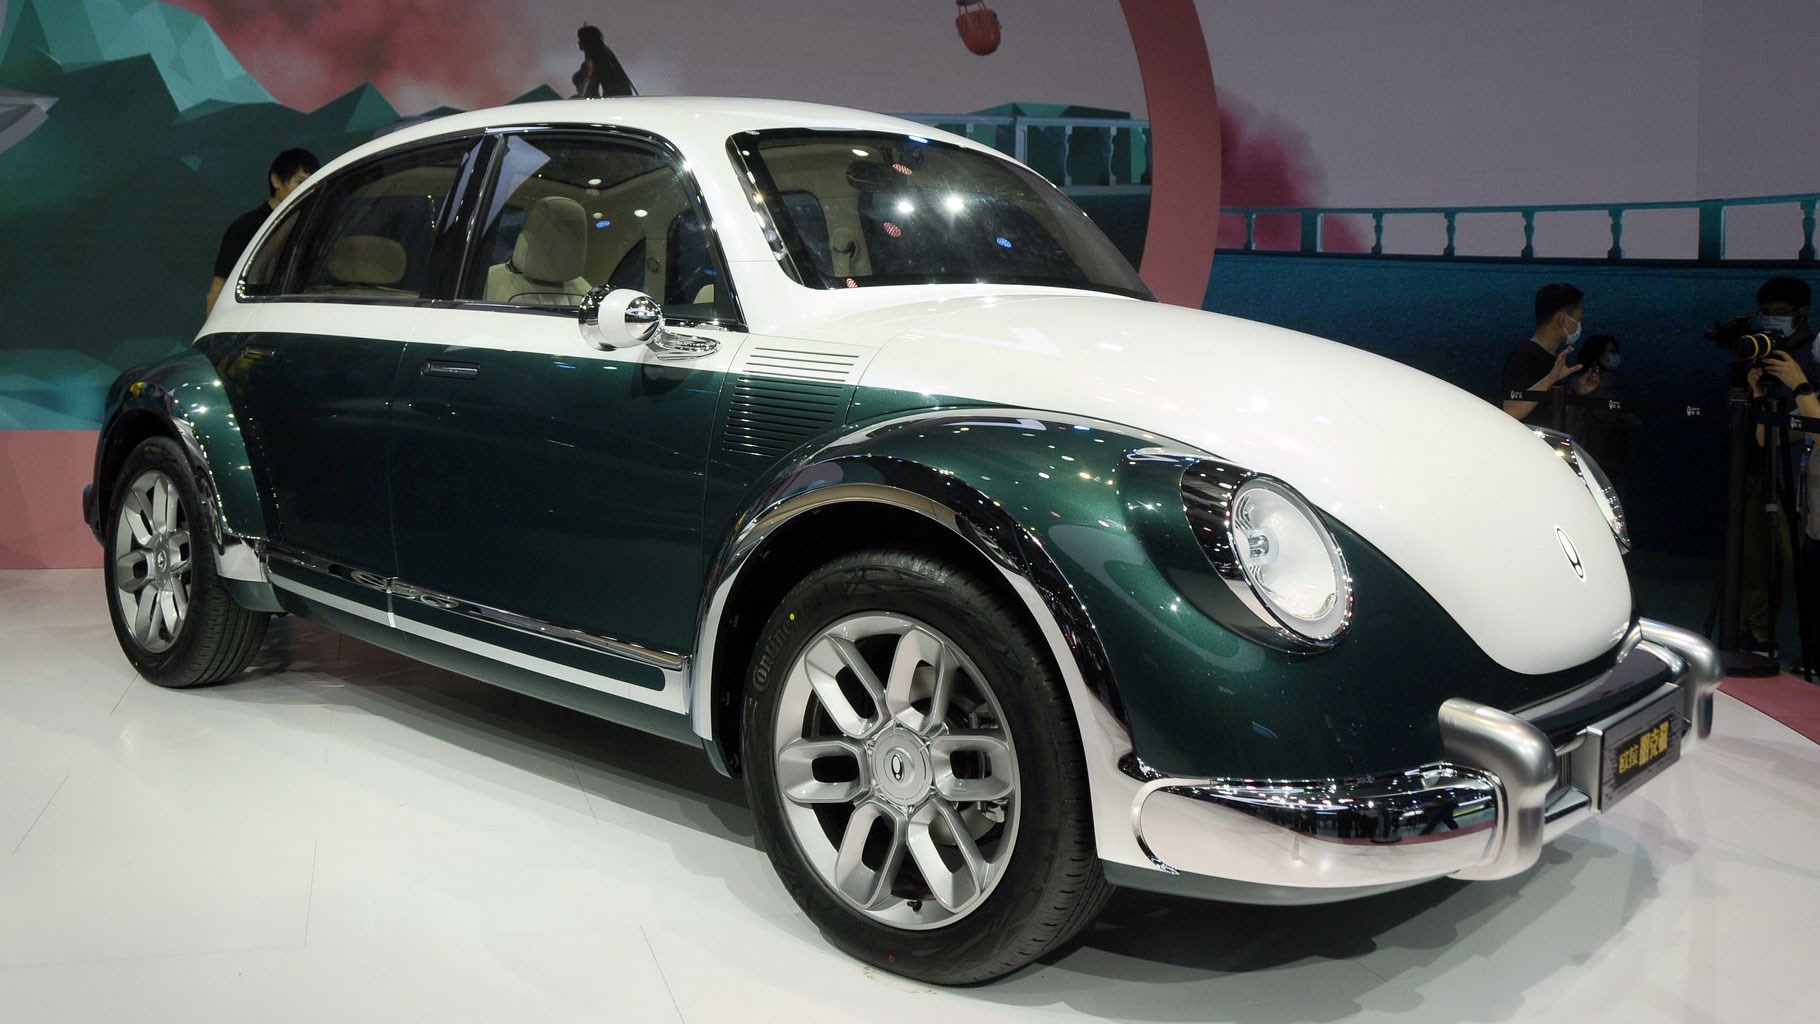 Volkswagen, Beetle tasarımını kopyalayan Çinli otomotiv şirketi Great Wall'a dava açabilir